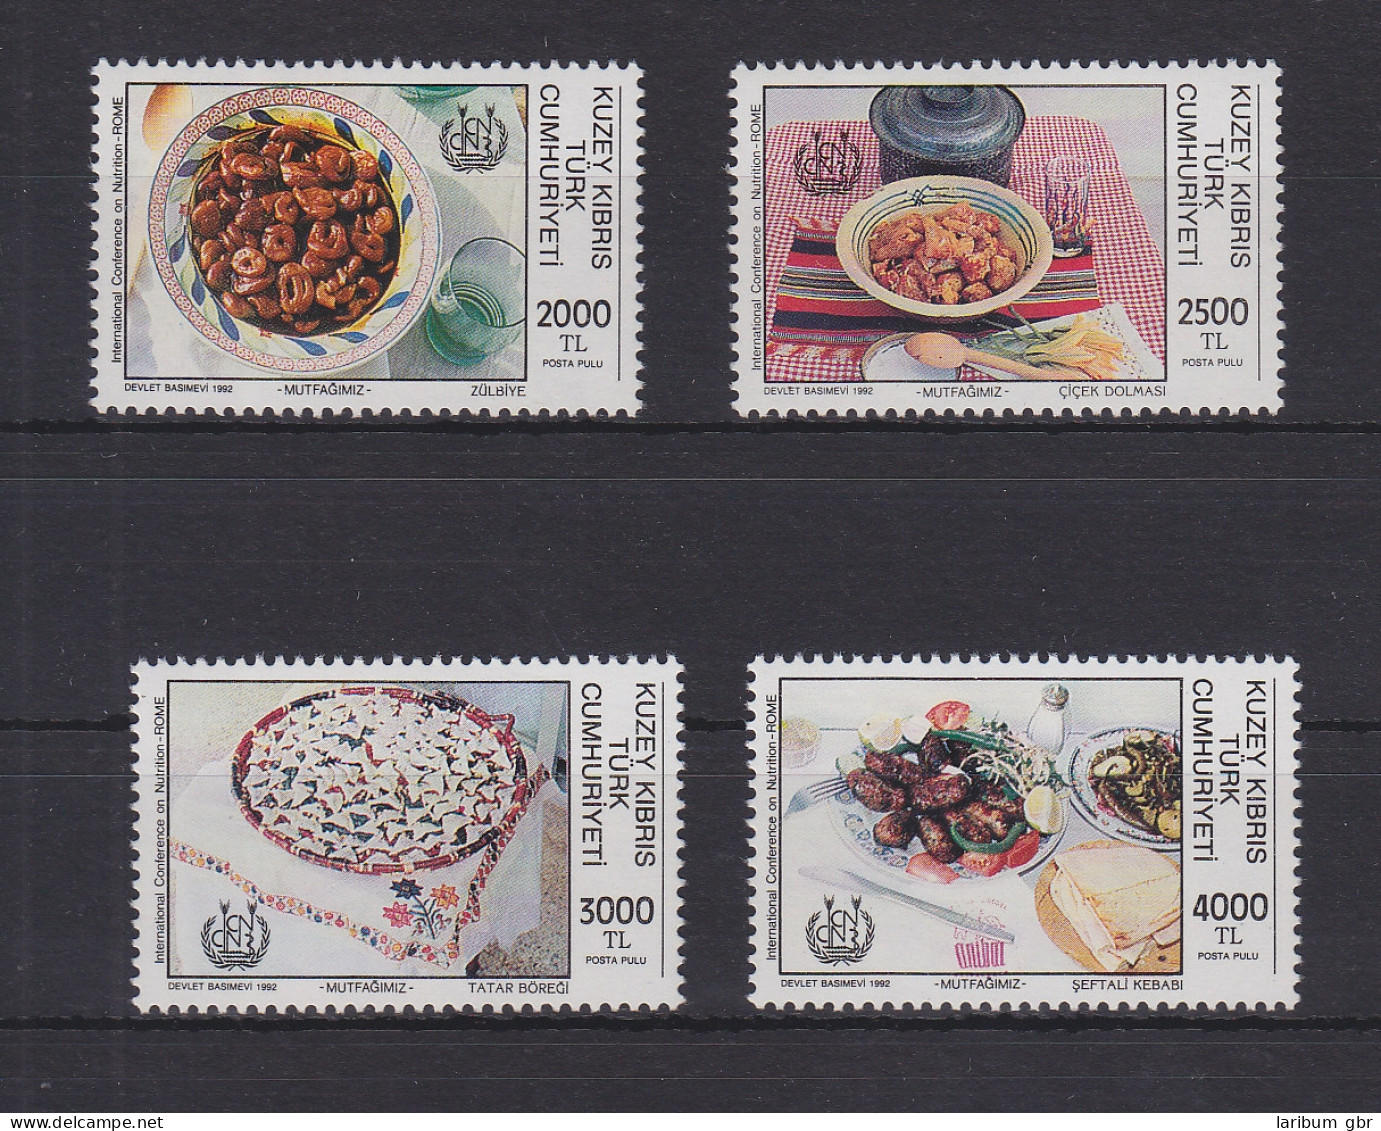 Türkisch-Zypern 347-350 Postfrisch Ernährung, Cyprus MNH #GE111 - Usados